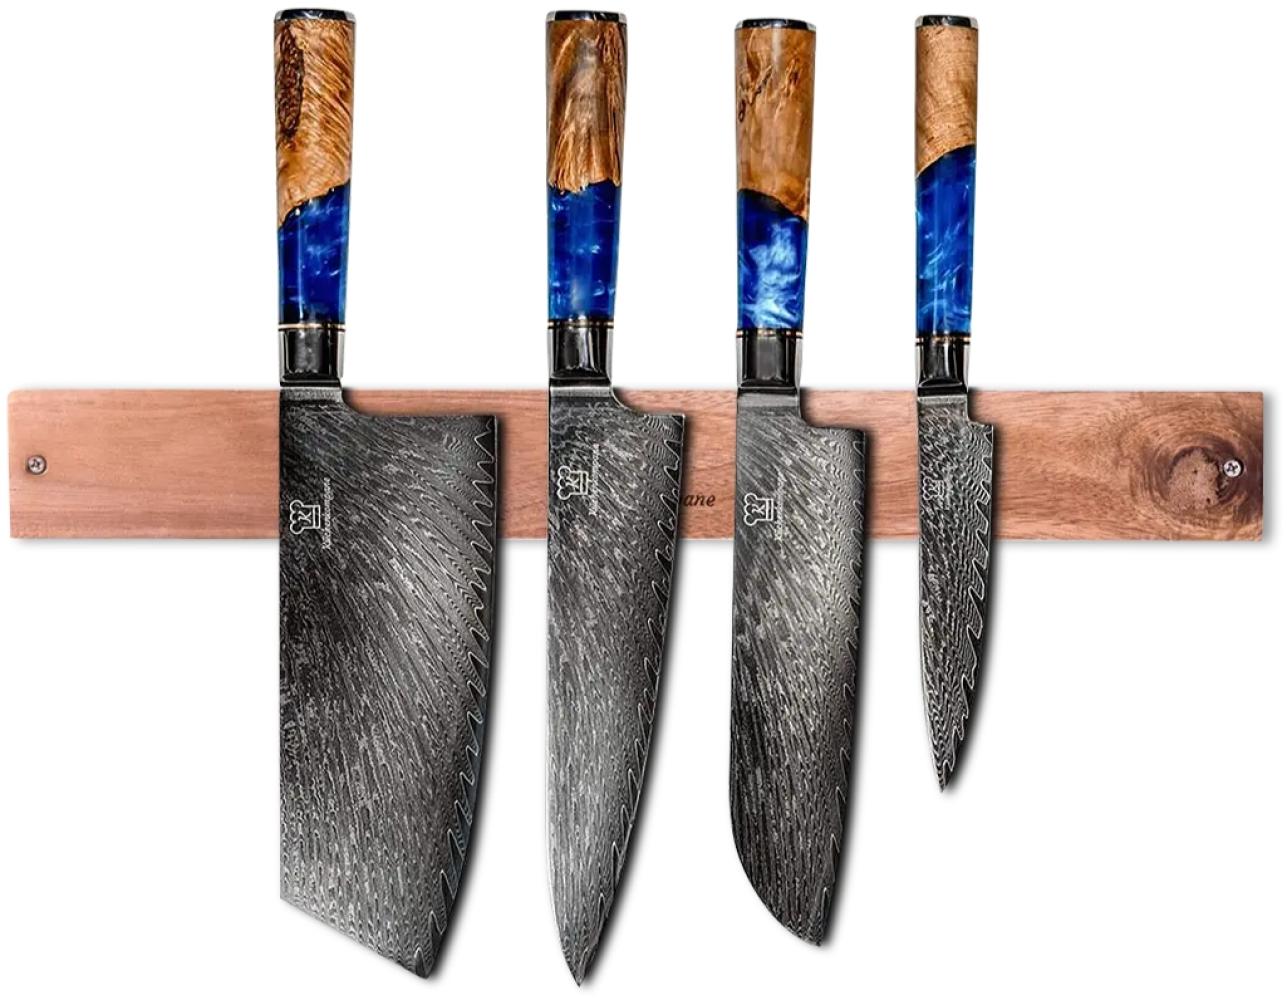 Damast Küchenmesser Set Kōyōju - 4 Damaszener Messer mit magnetischer Holzleiste aus Akazie - 67 Lagen Damaststahl - 15° Schleifwinkel Bild 1